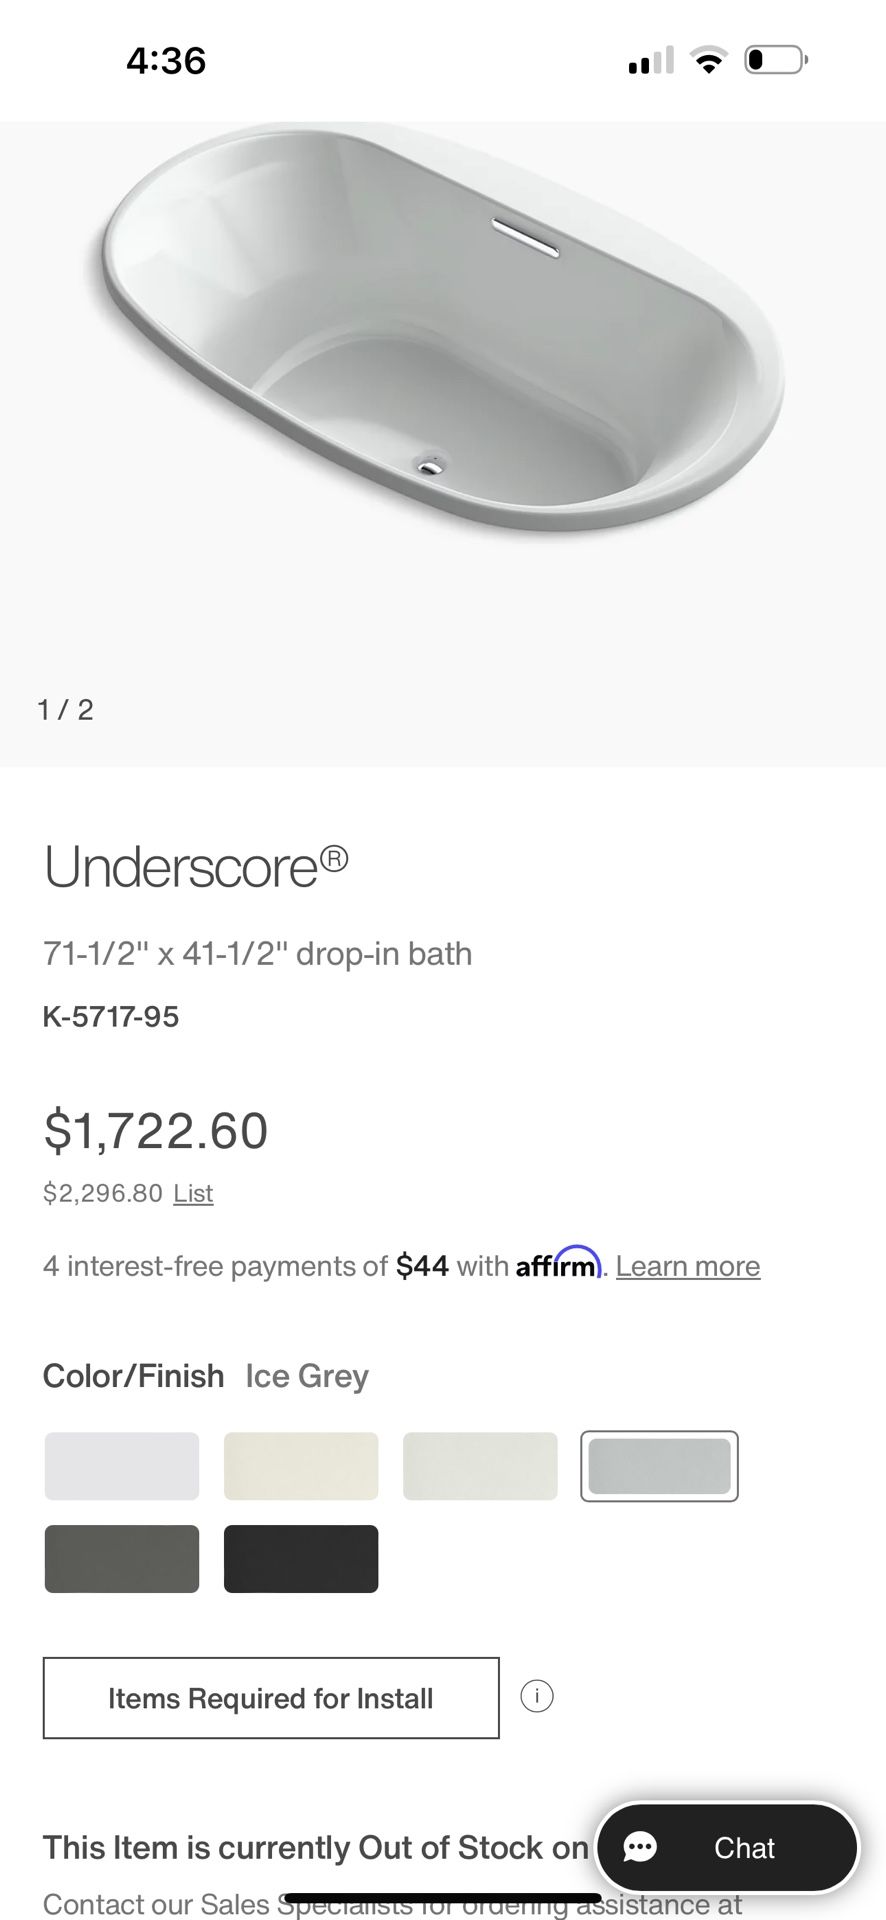 Kohler Underscore® 71-1/2" x 41-1/2" drop-in bath K-5717-95 Oval oversized soaking tub $650